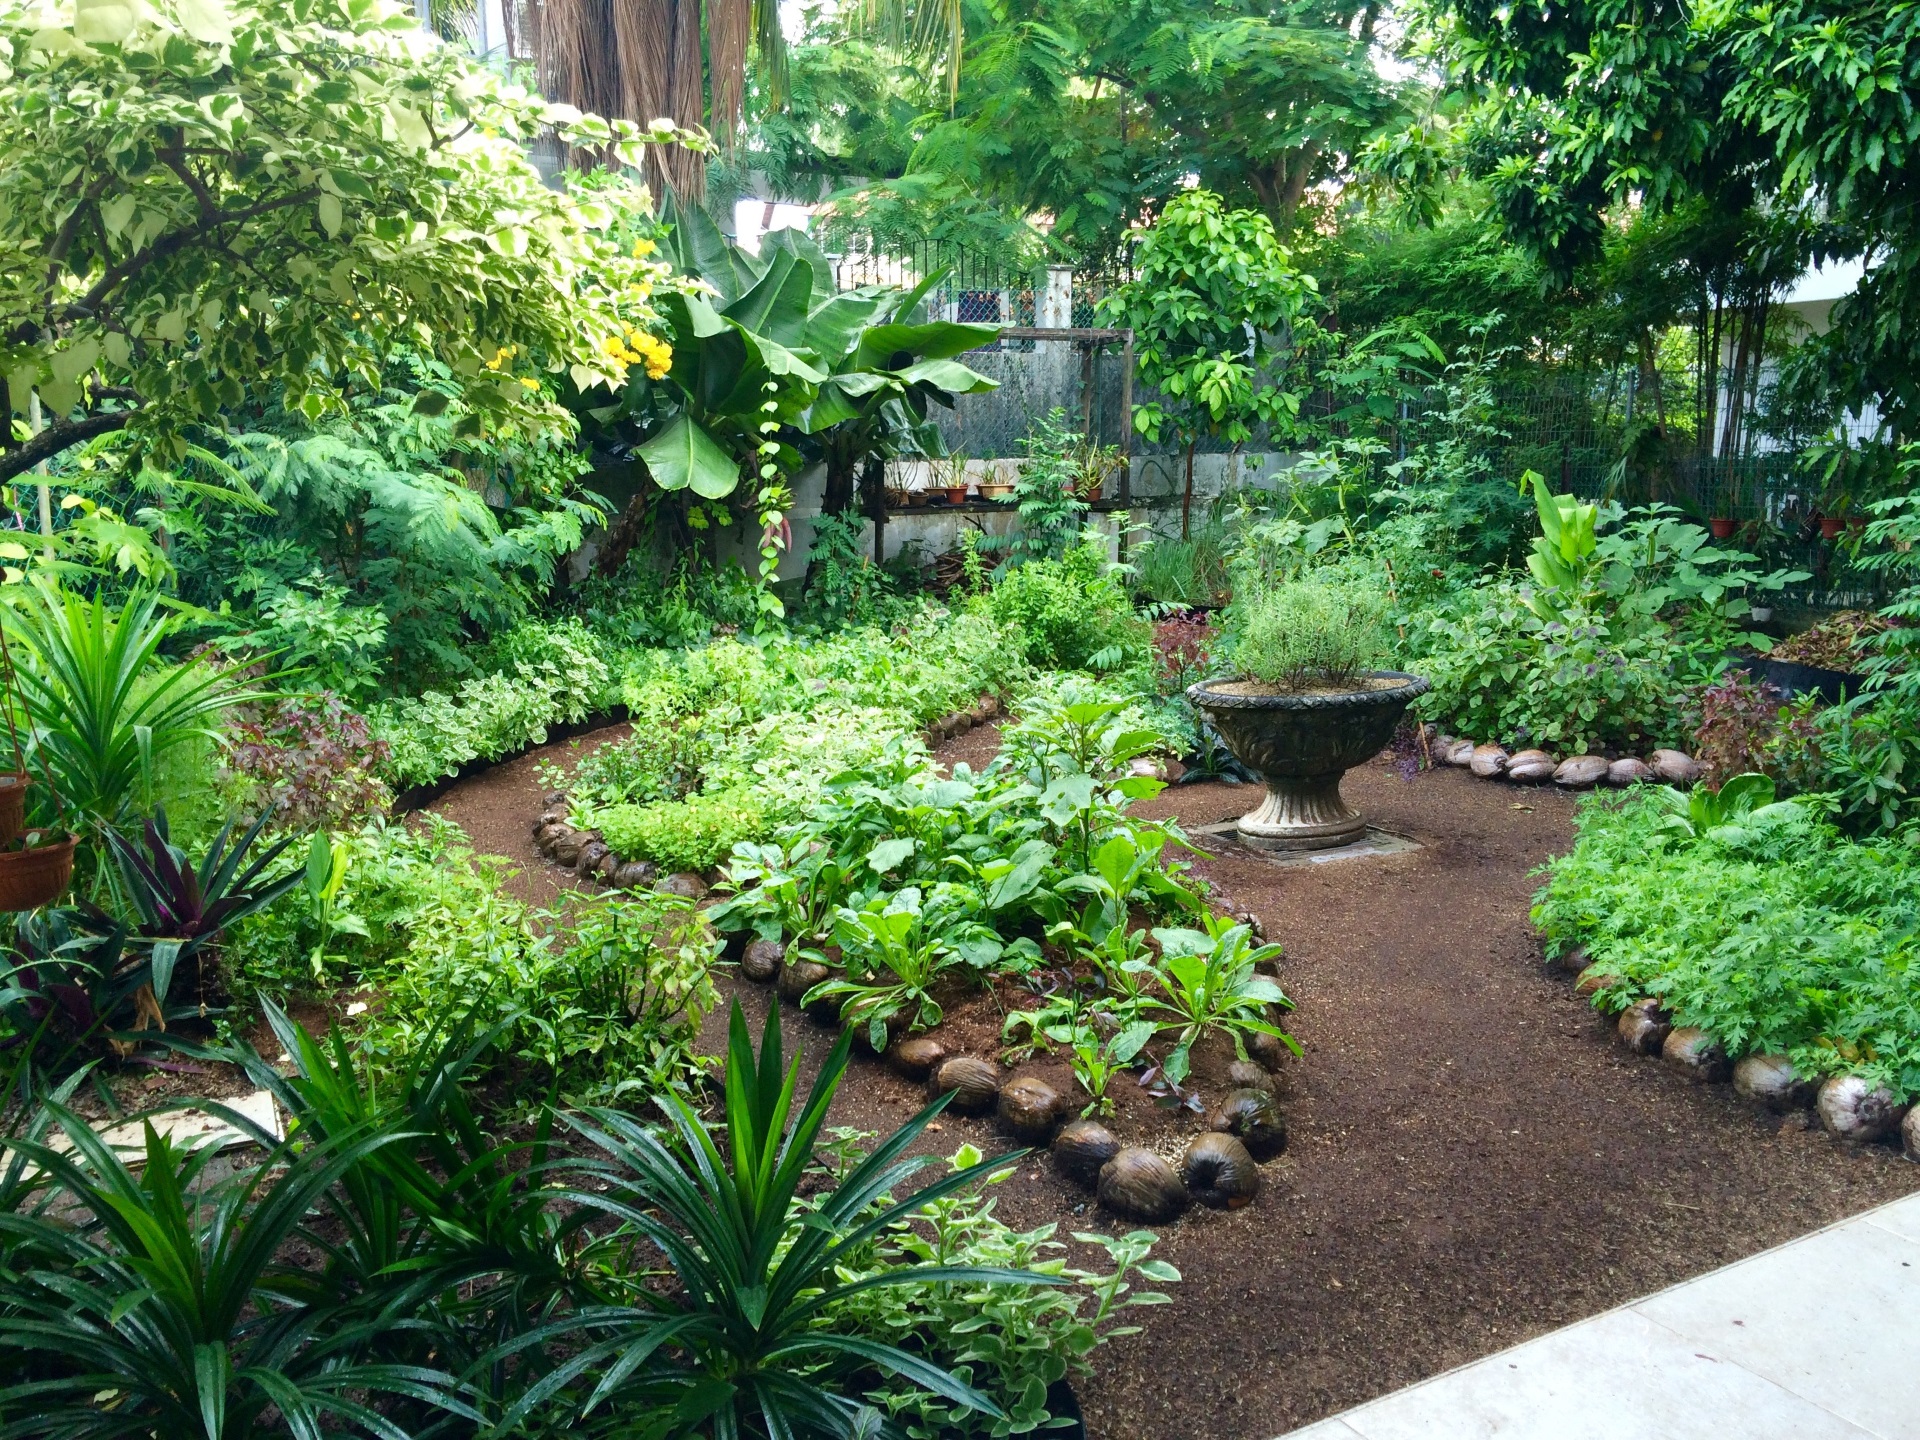  garden design examples